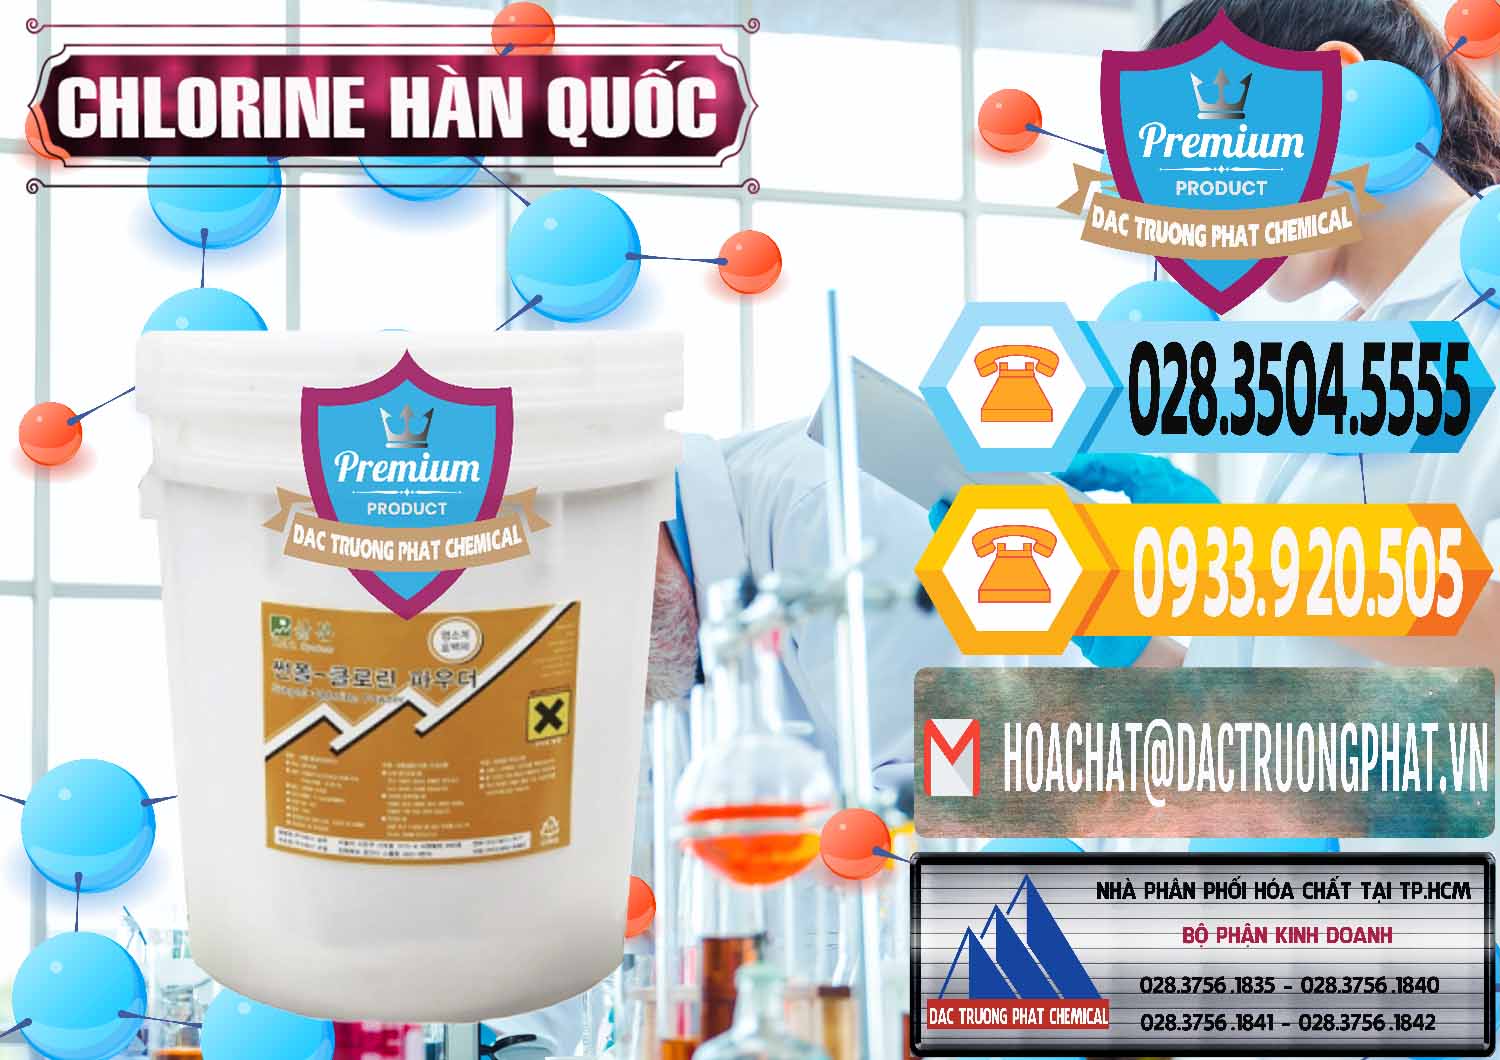 Đơn vị cung cấp & bán Chlorine – Clorin 70% Hàn Quốc Korea - 0345 - Cty nhập khẩu _ cung cấp hóa chất tại TP.HCM - hoachattayrua.net